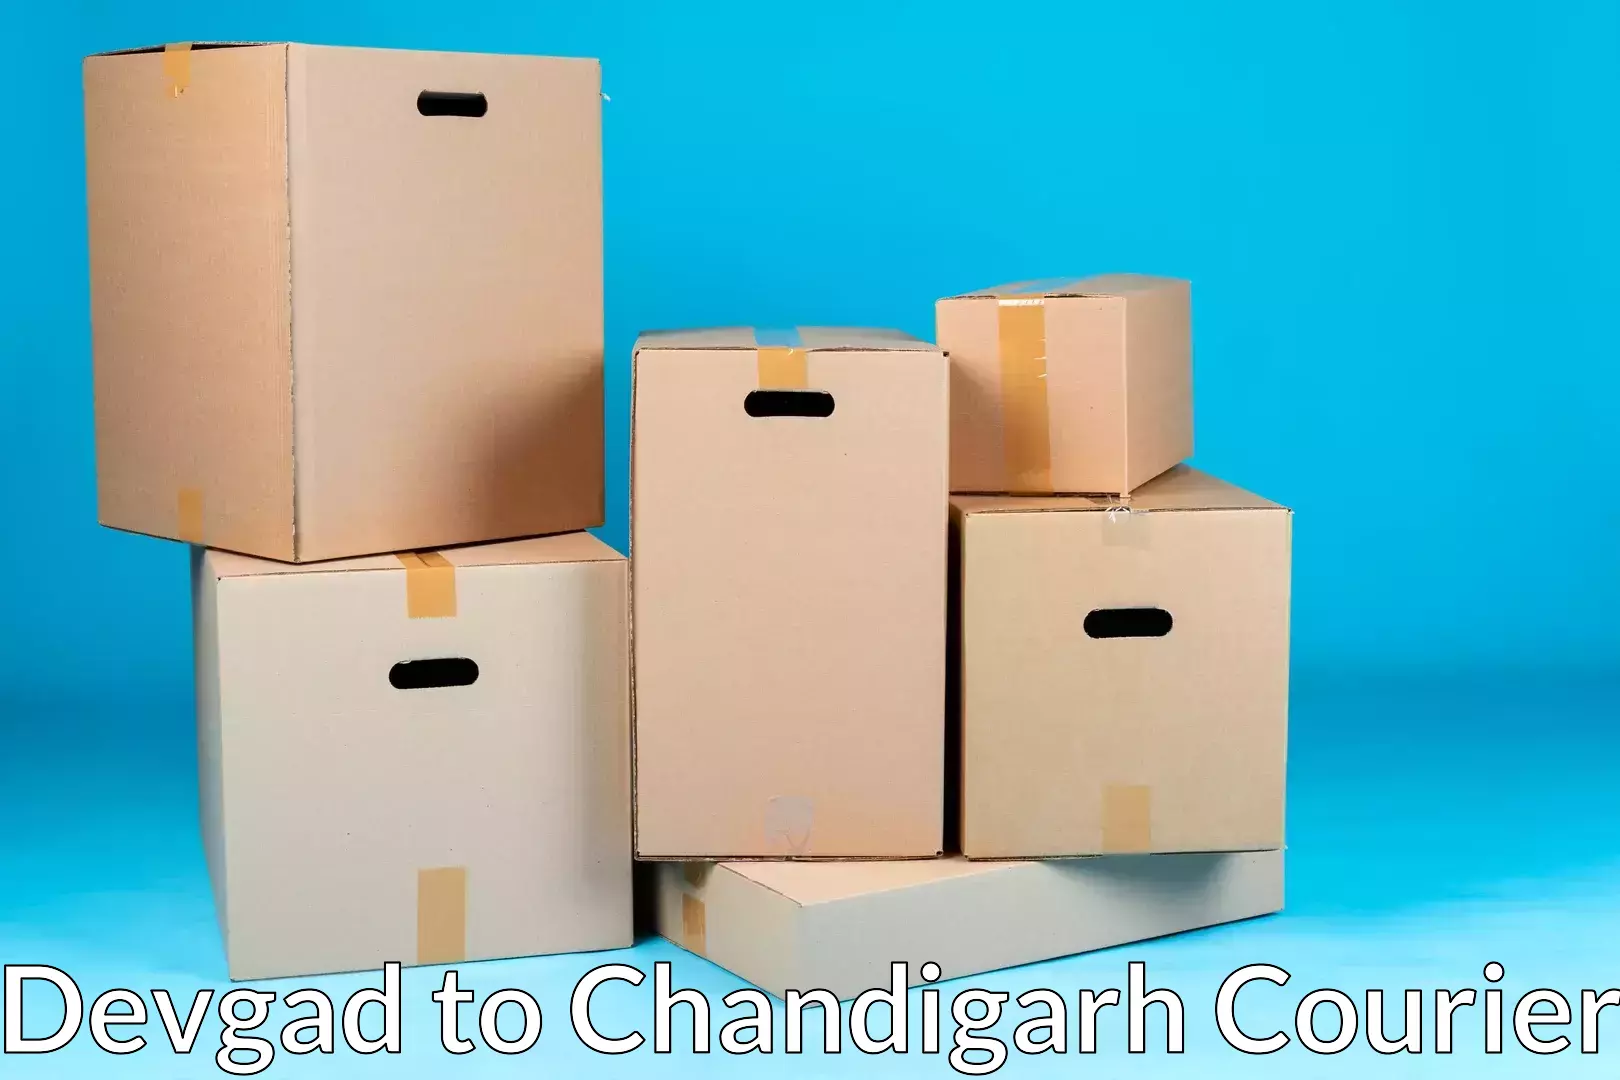 Furniture transport and storage Devgad to Chandigarh